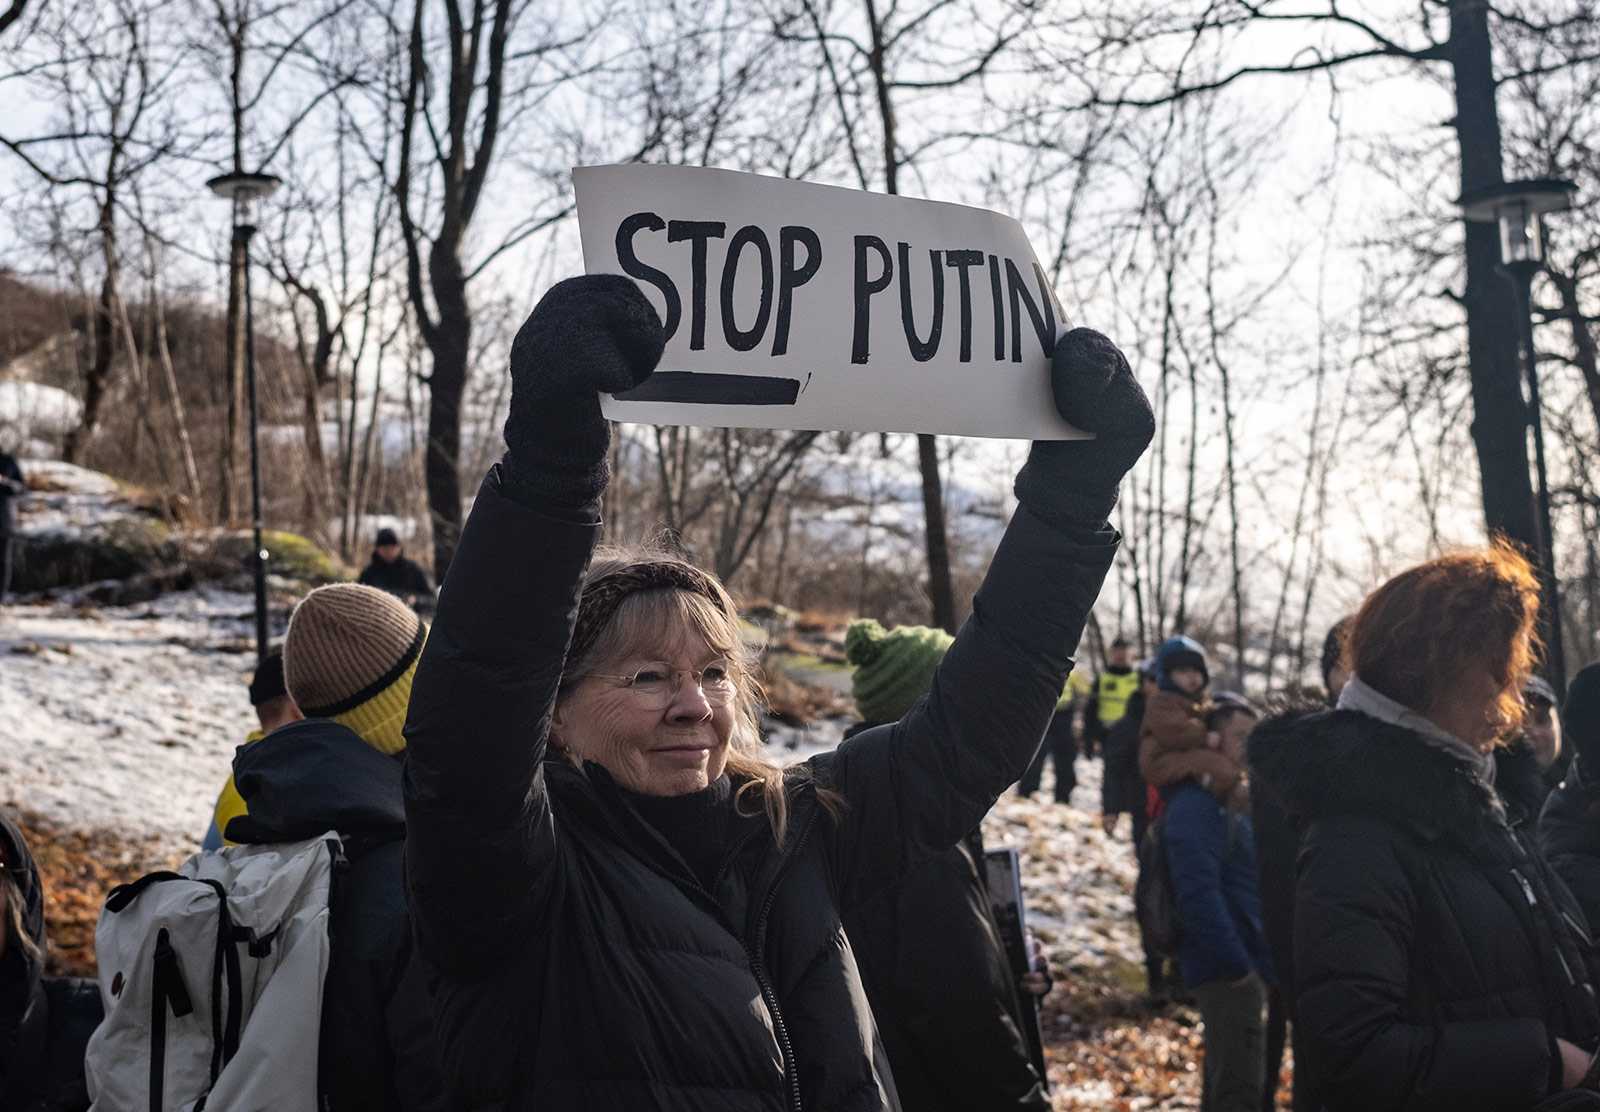 Stop Putin sign